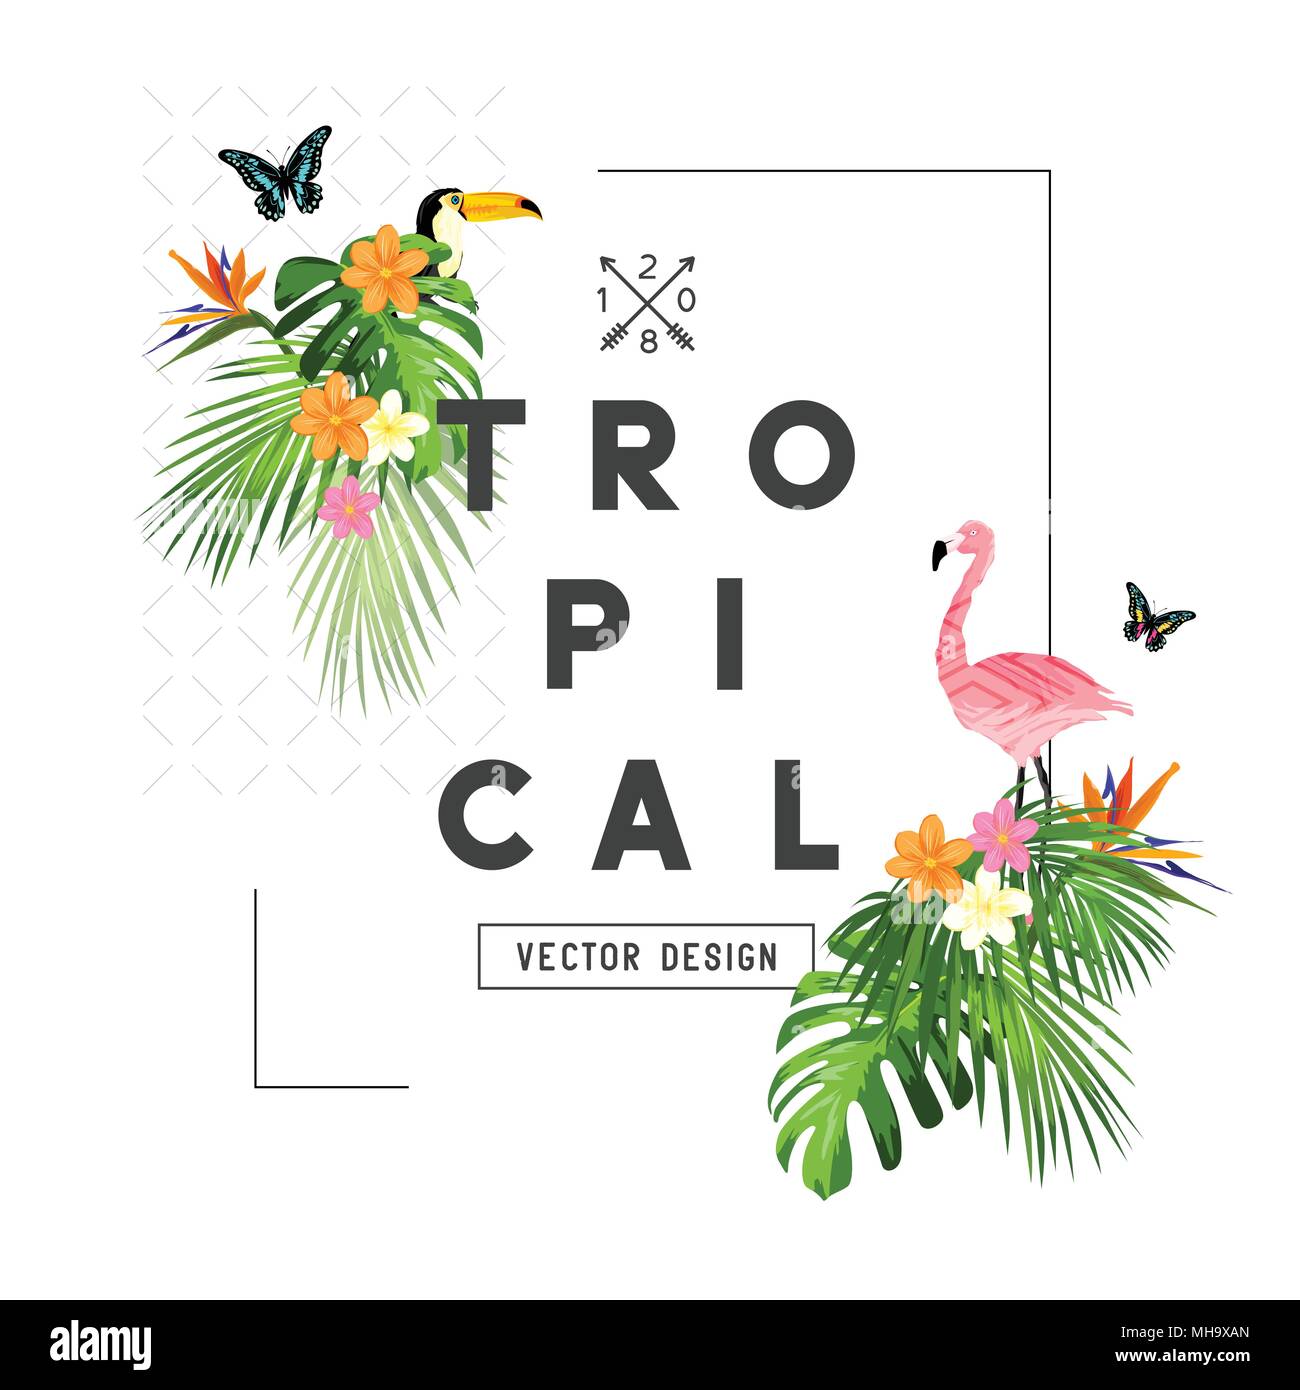 Tropischer Regenwald Elemente und den Rahmen mit Palmenblättern, Flora und Fauna. Vector Illustration Stock Vektor